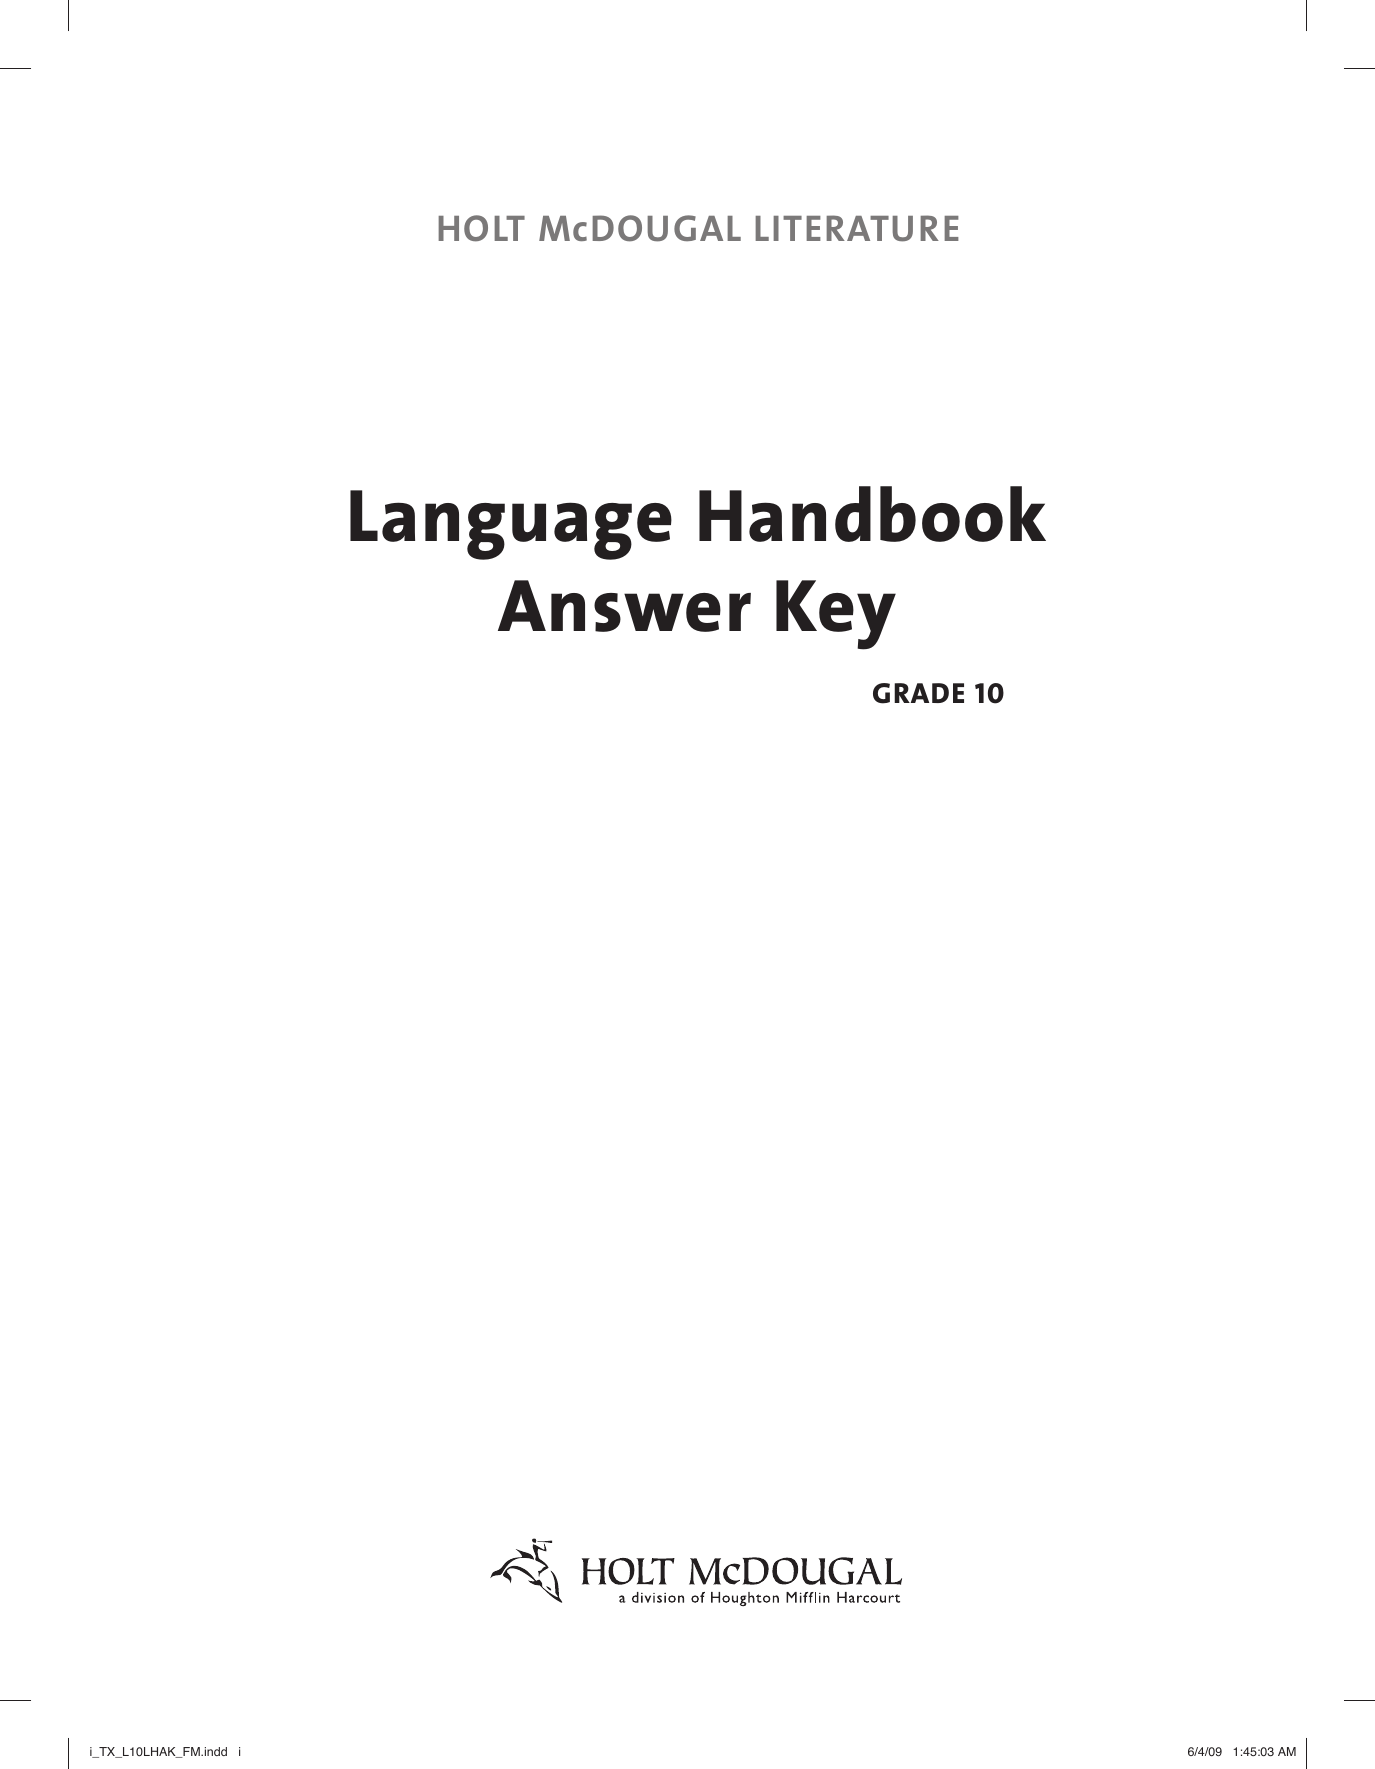 Language Handbook 3 Using Verbs Worksheet 7 Answers